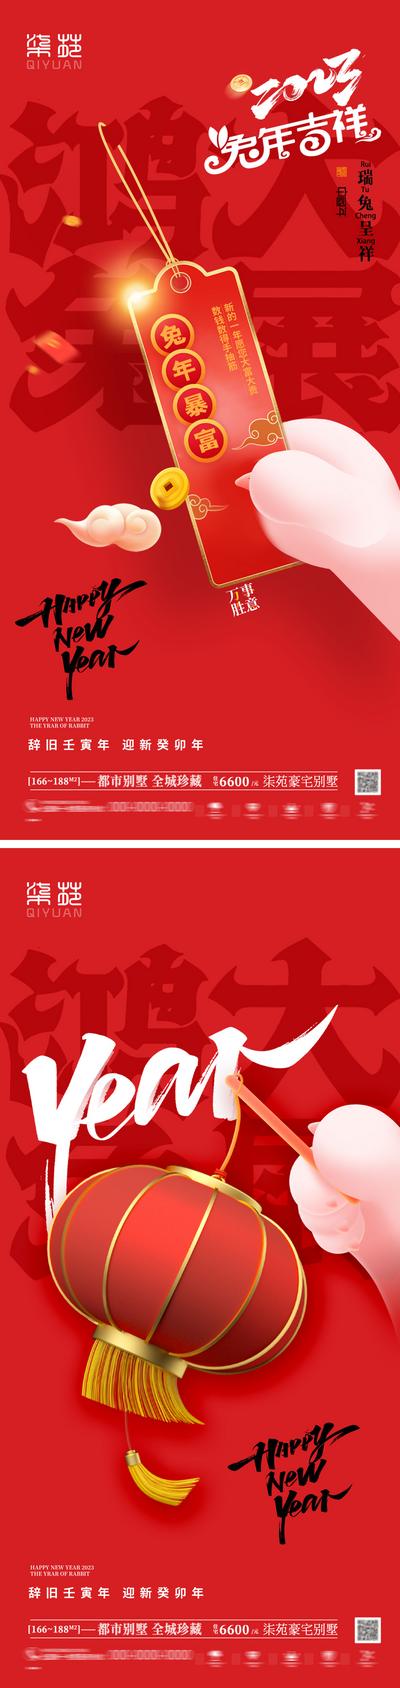 南门网 海报 地产 公历节日 元旦 兔年 灯笼 中式 插画